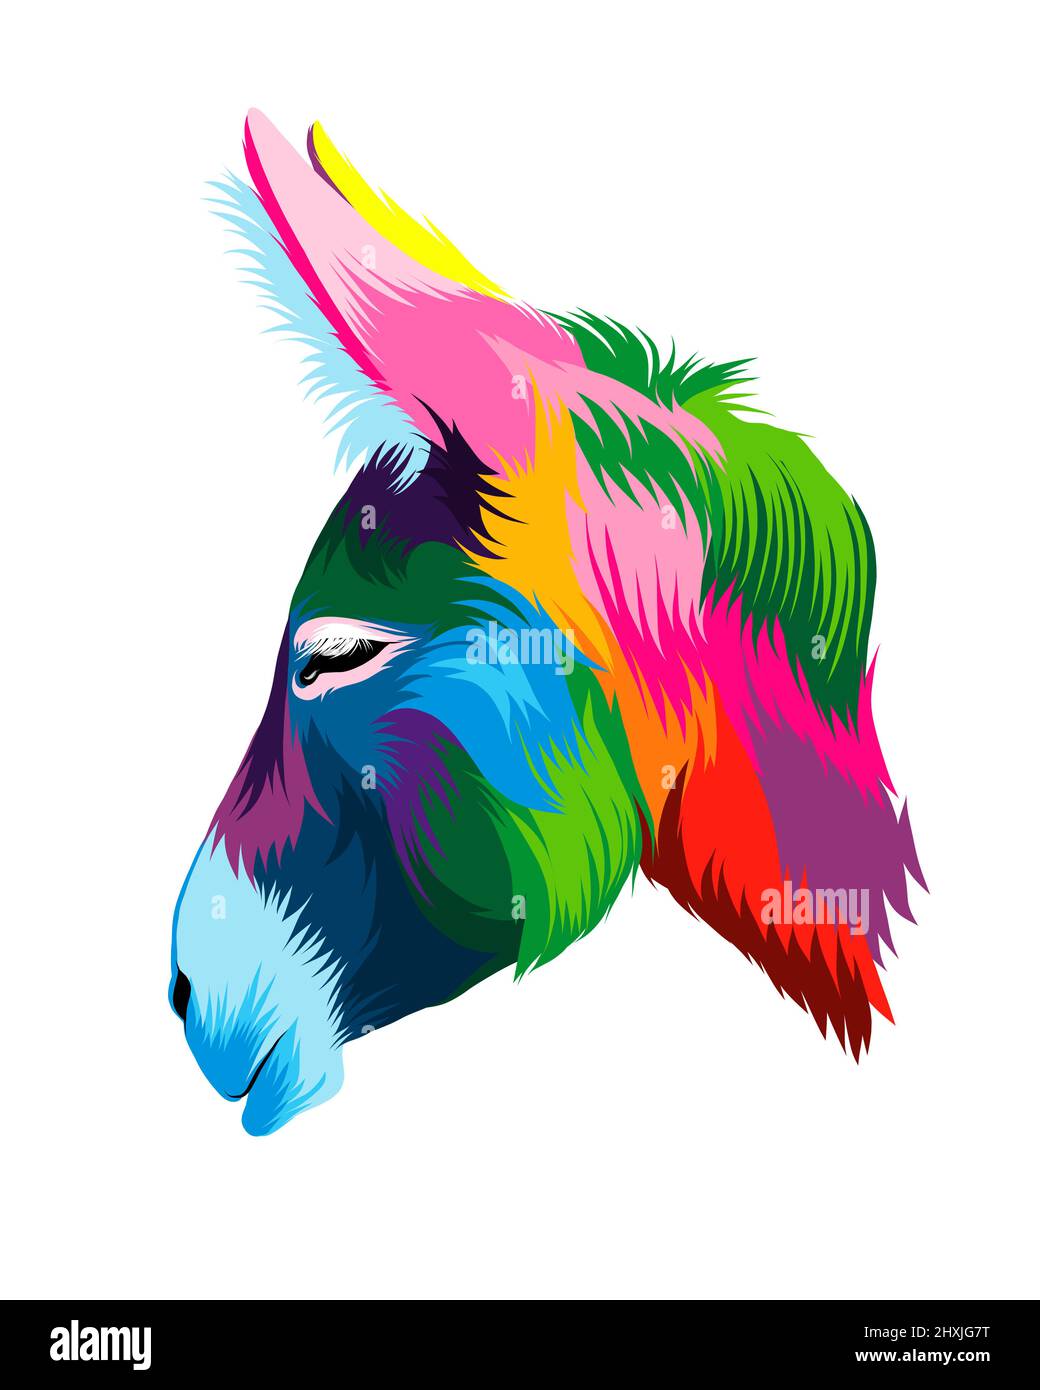 Résumé Portrait de tête d'âne à partir de peintures multicolores. Mise en plan colorée. Illustration vectorielle des peintures Illustration de Vecteur